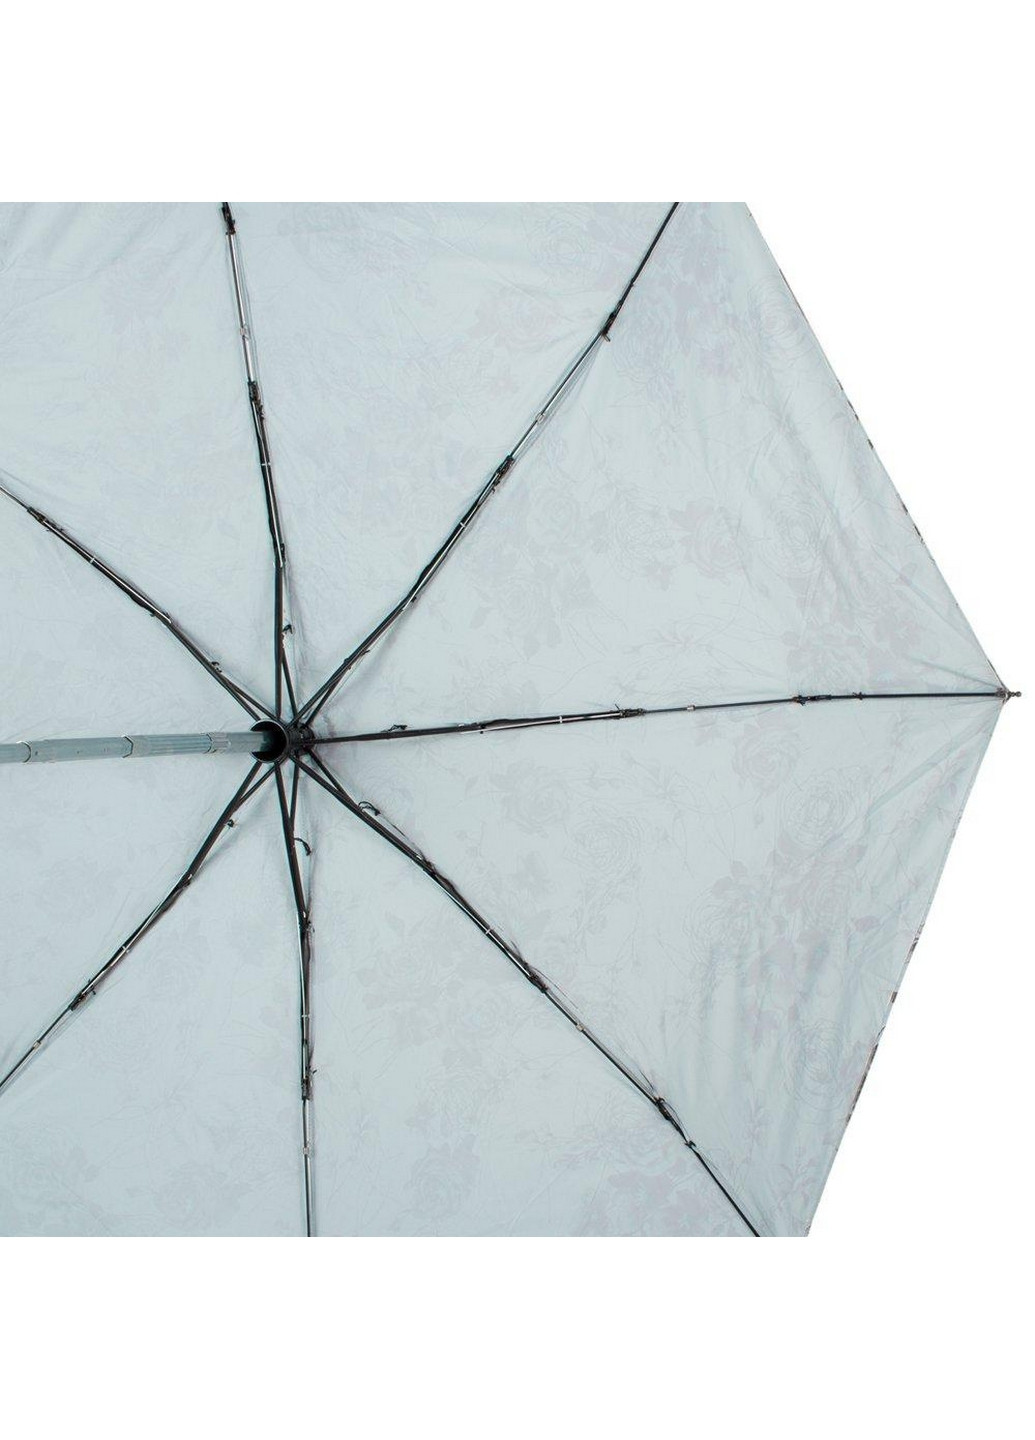 Складной женский зонт автомат 100 см Zest (260285815)